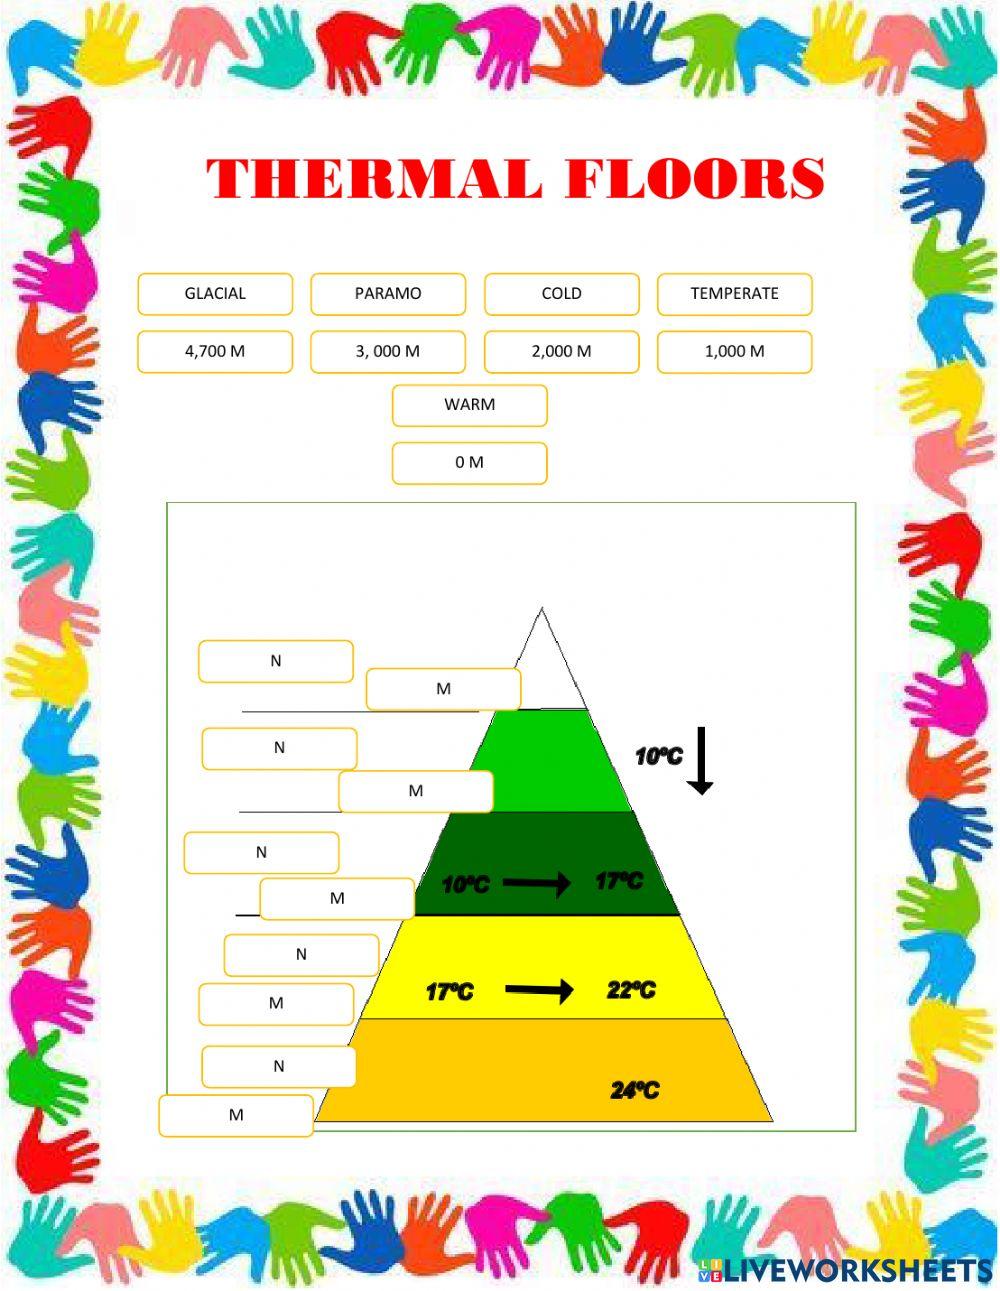 Thermal floors